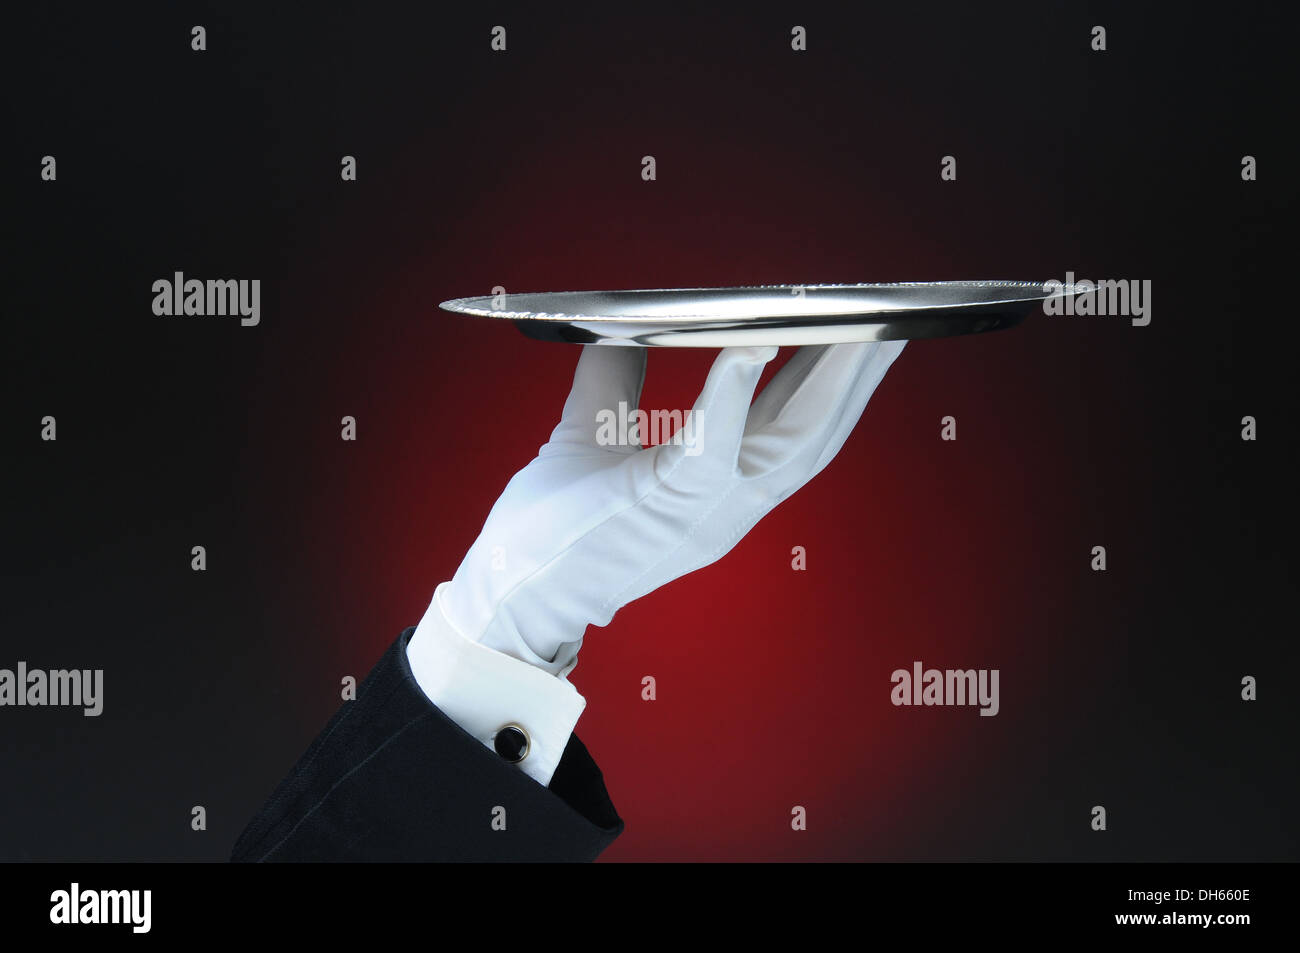 Primo piano di un cameriere la mano che regge un argento che serve il vassoio nella sua mano su una luce ot rosso scuro dello sfondo. Foto Stock